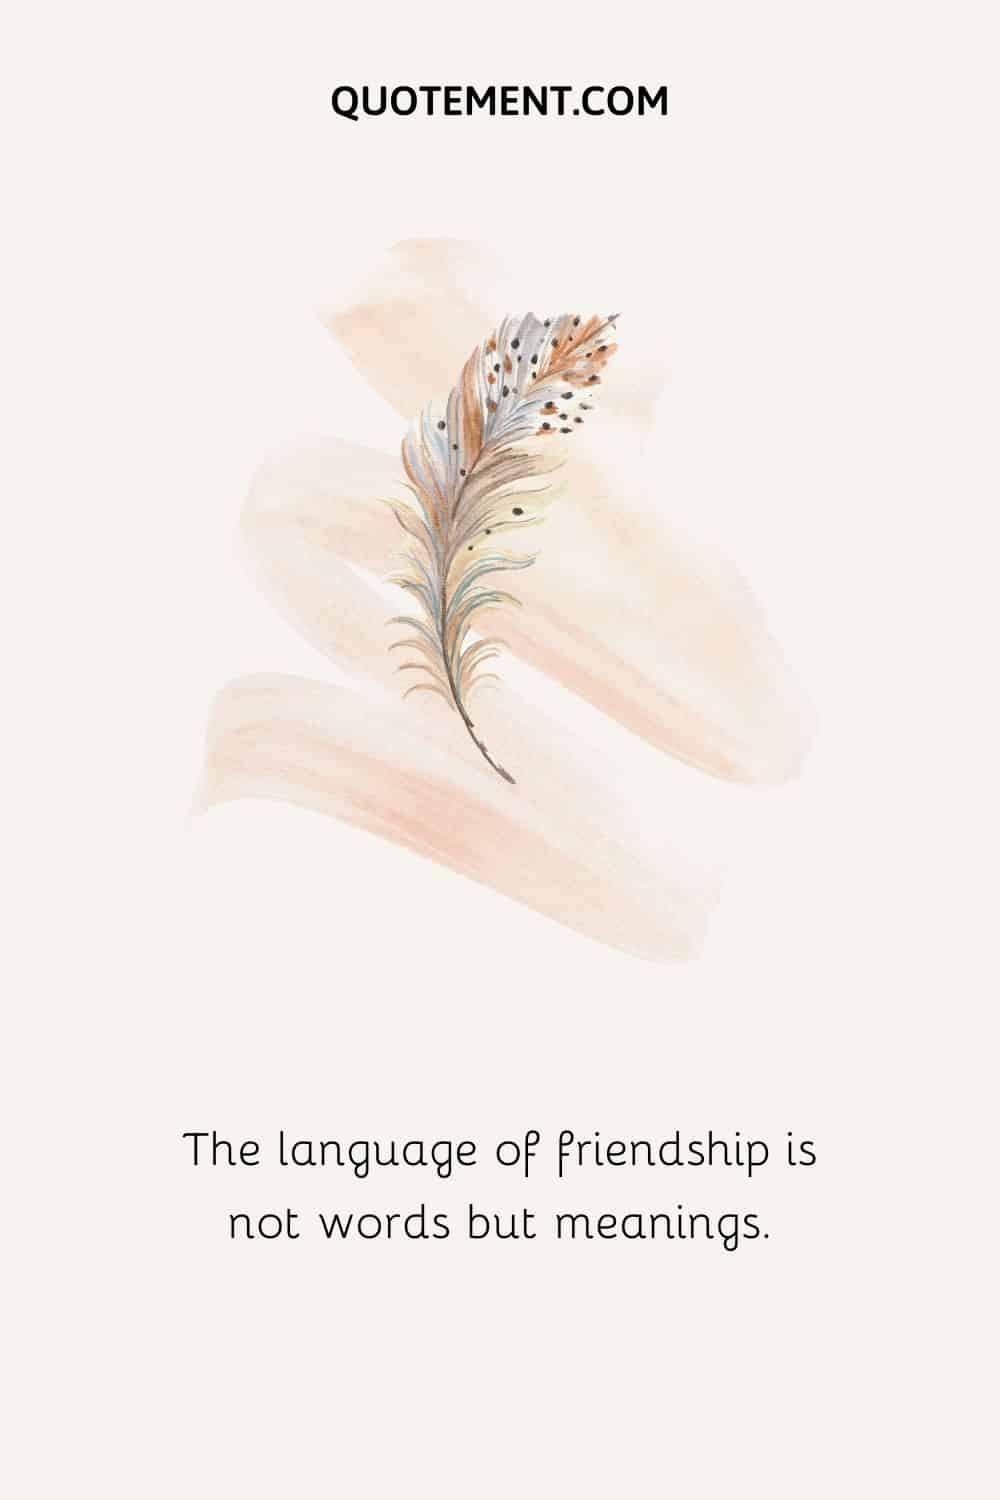 El lenguaje de la amistad no son las palabras, sino los significados.